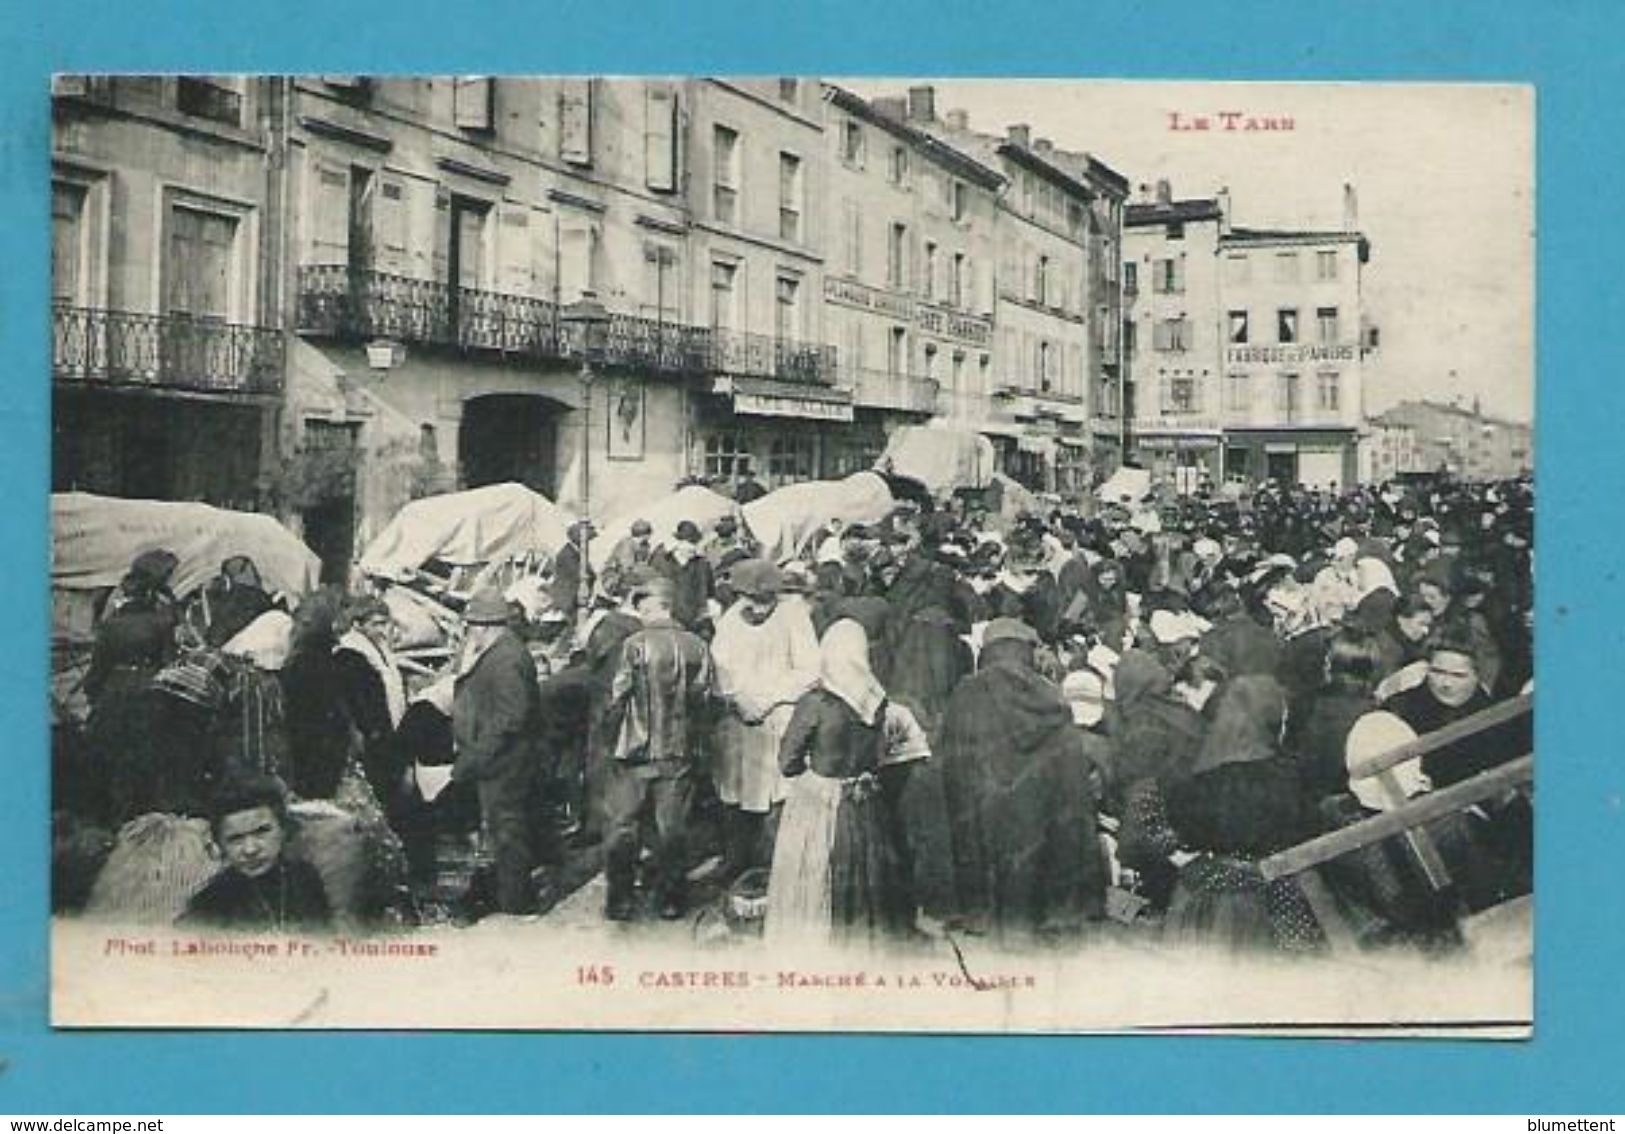 CPA LABOUCHE 145 - Marché à La Volaille CASTRES 81 - Castres